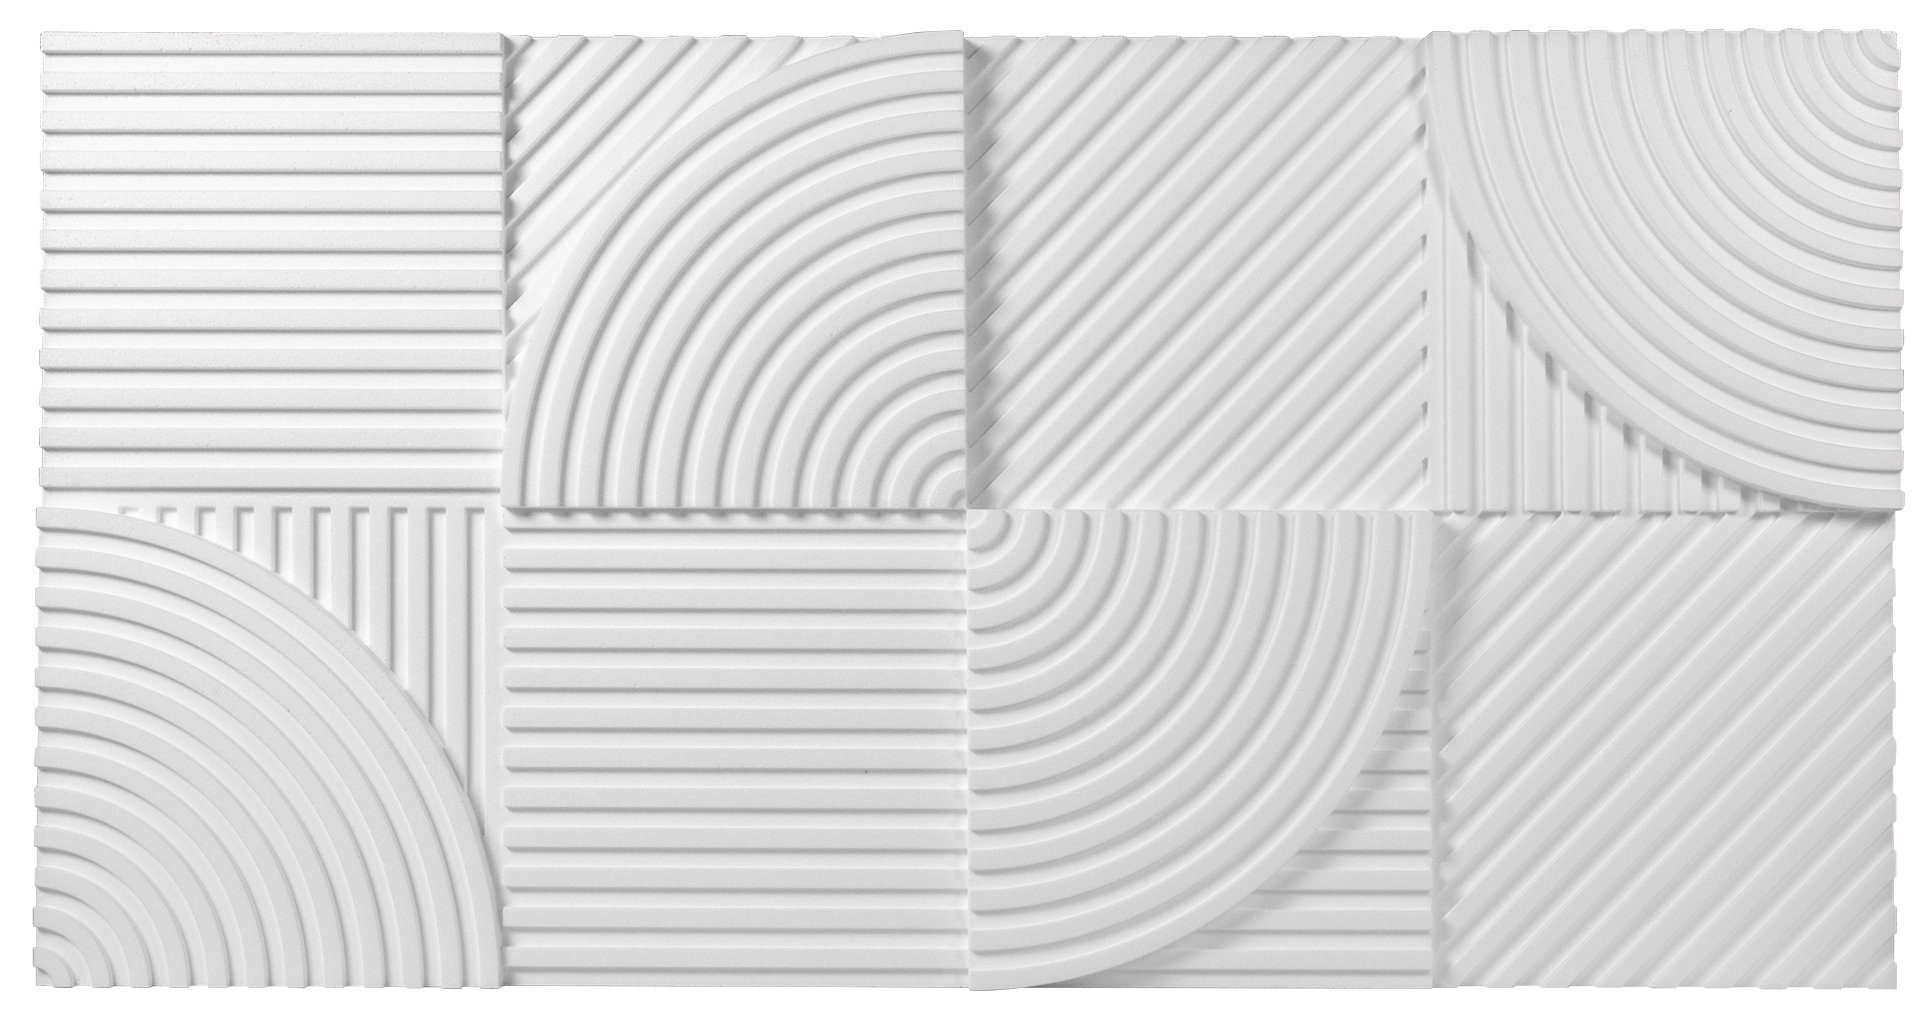 marbet design Wanddekoobjekt PD-4 Wärmedämmung weiß (3D Wandplatte Deko) Paneele Wandpaneel Wandverkleidung Wandpaneele Wand 96x48x3cm 0,46m) Akustik Platte, Styropor (1